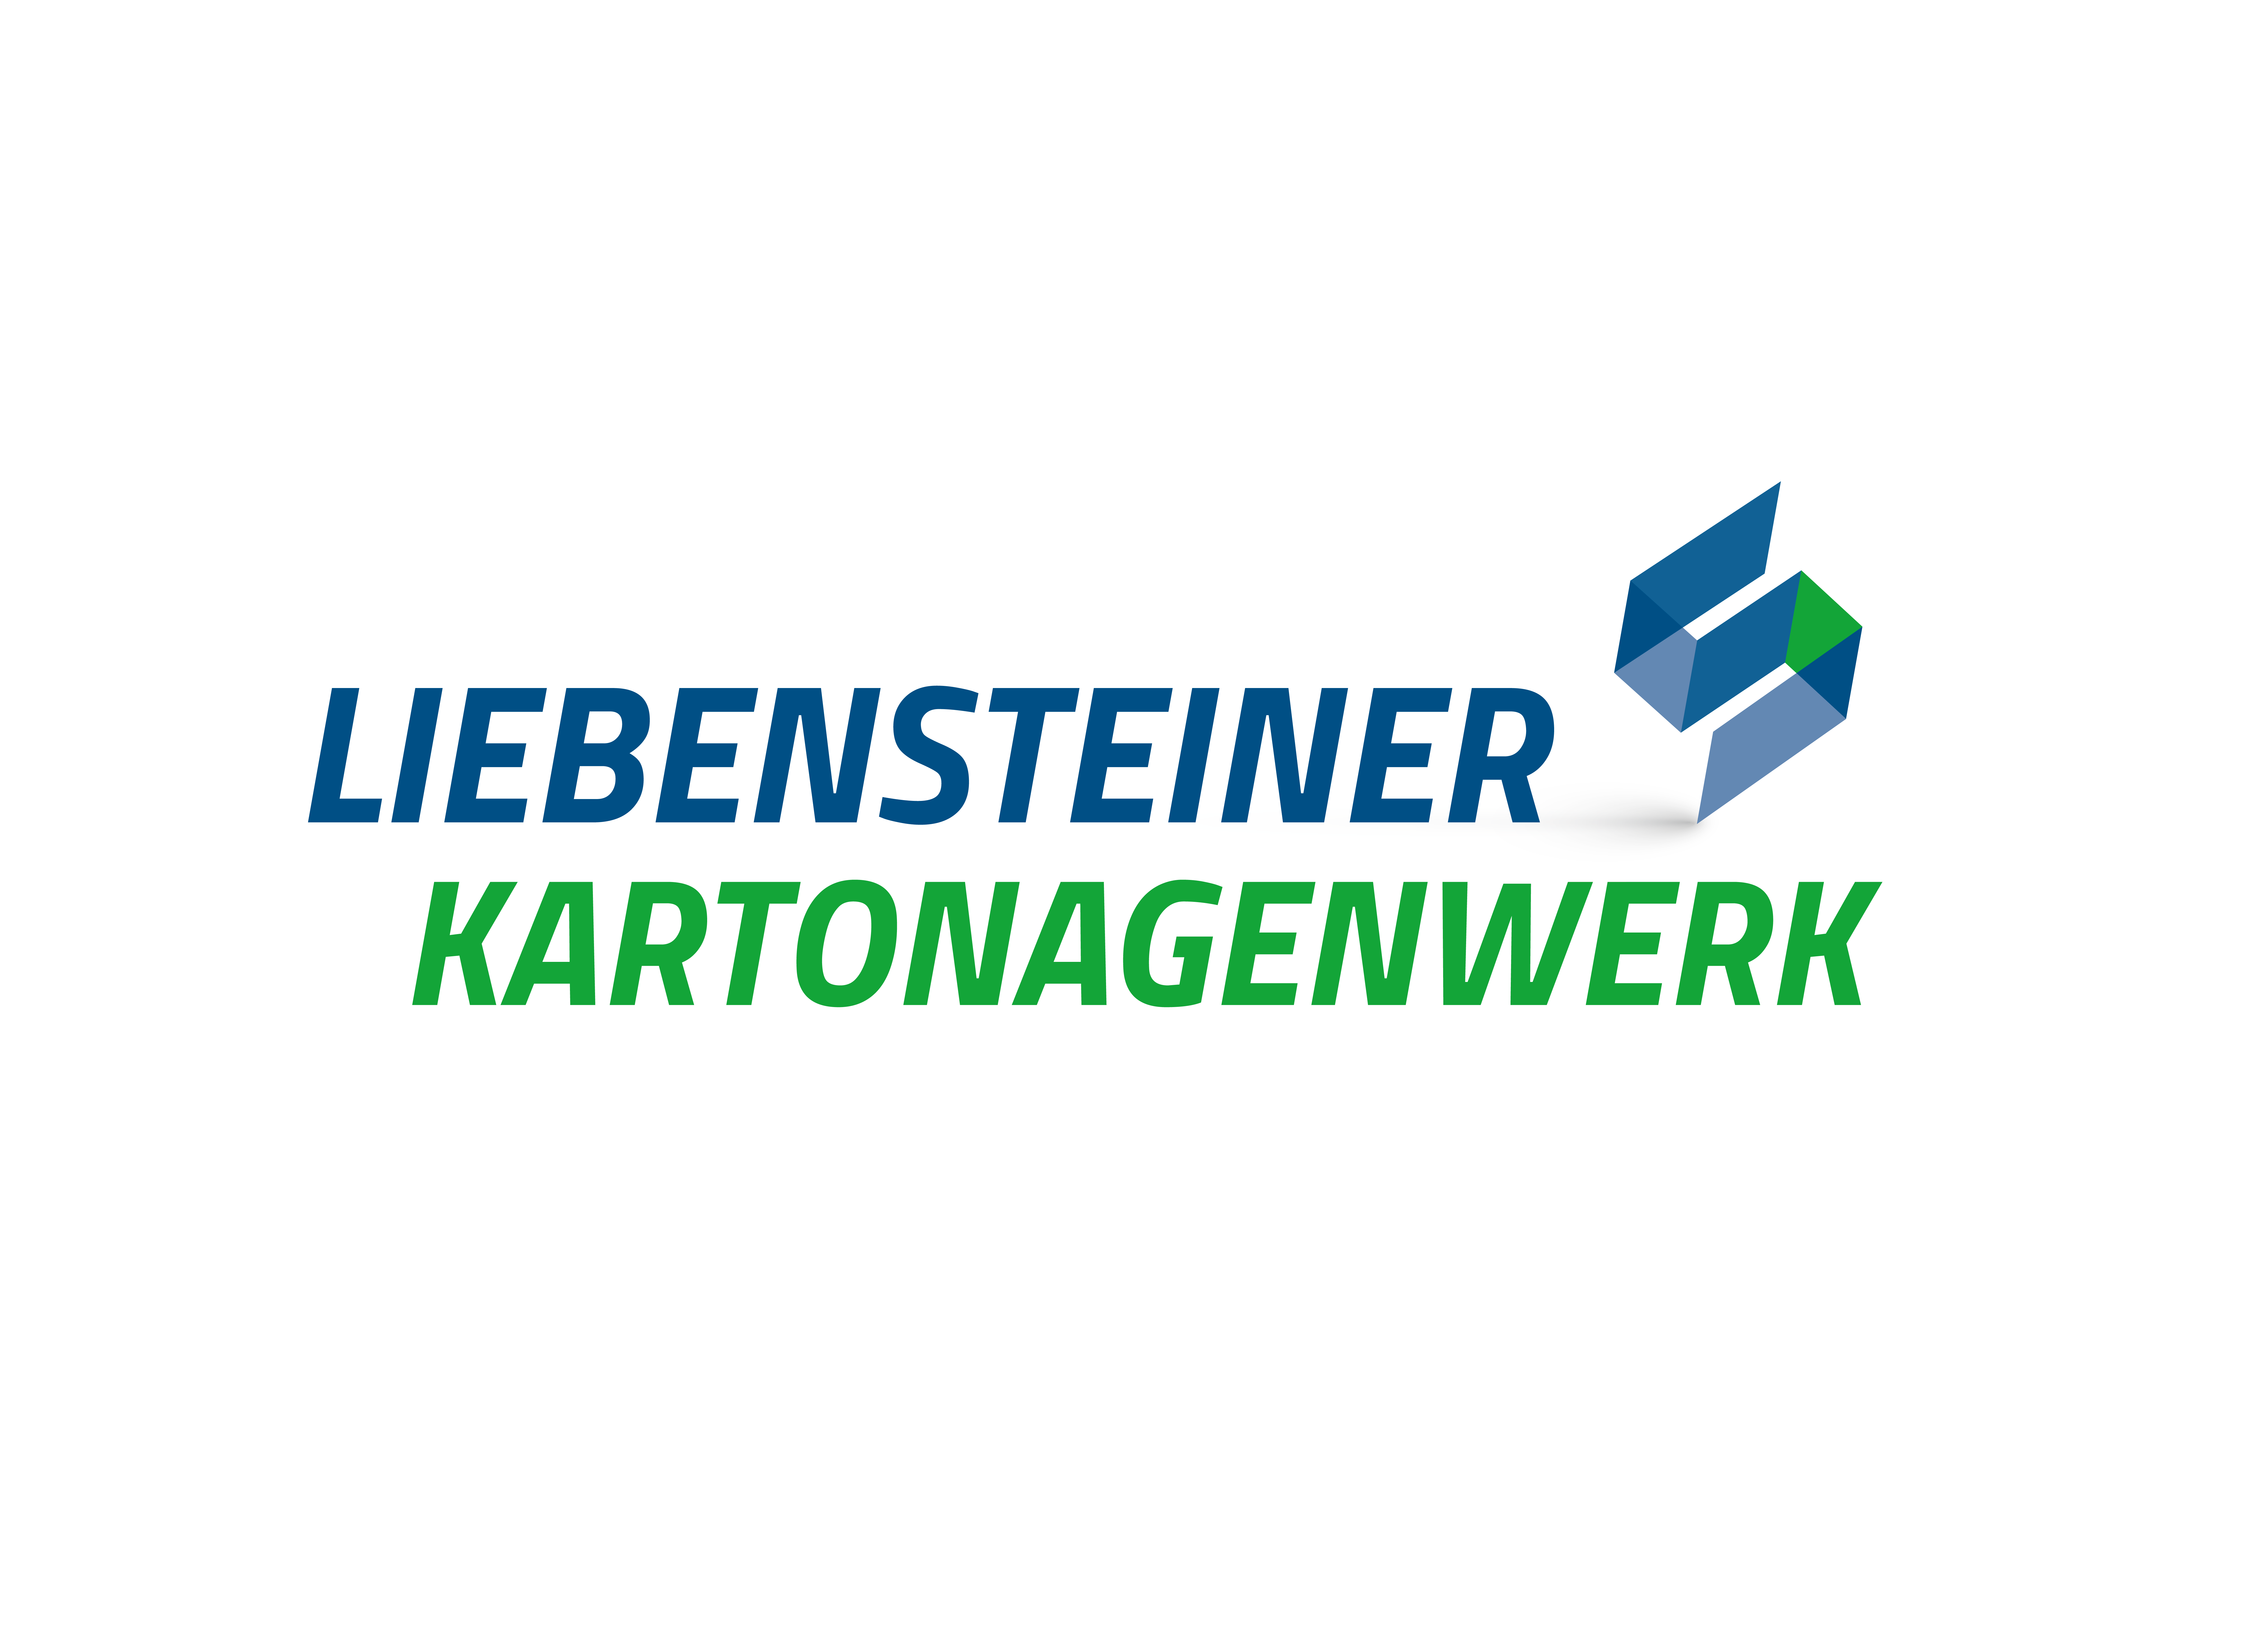 Liebensteiner_Kartonagenwerk_Logo_CMYK_mit_Schatten.png